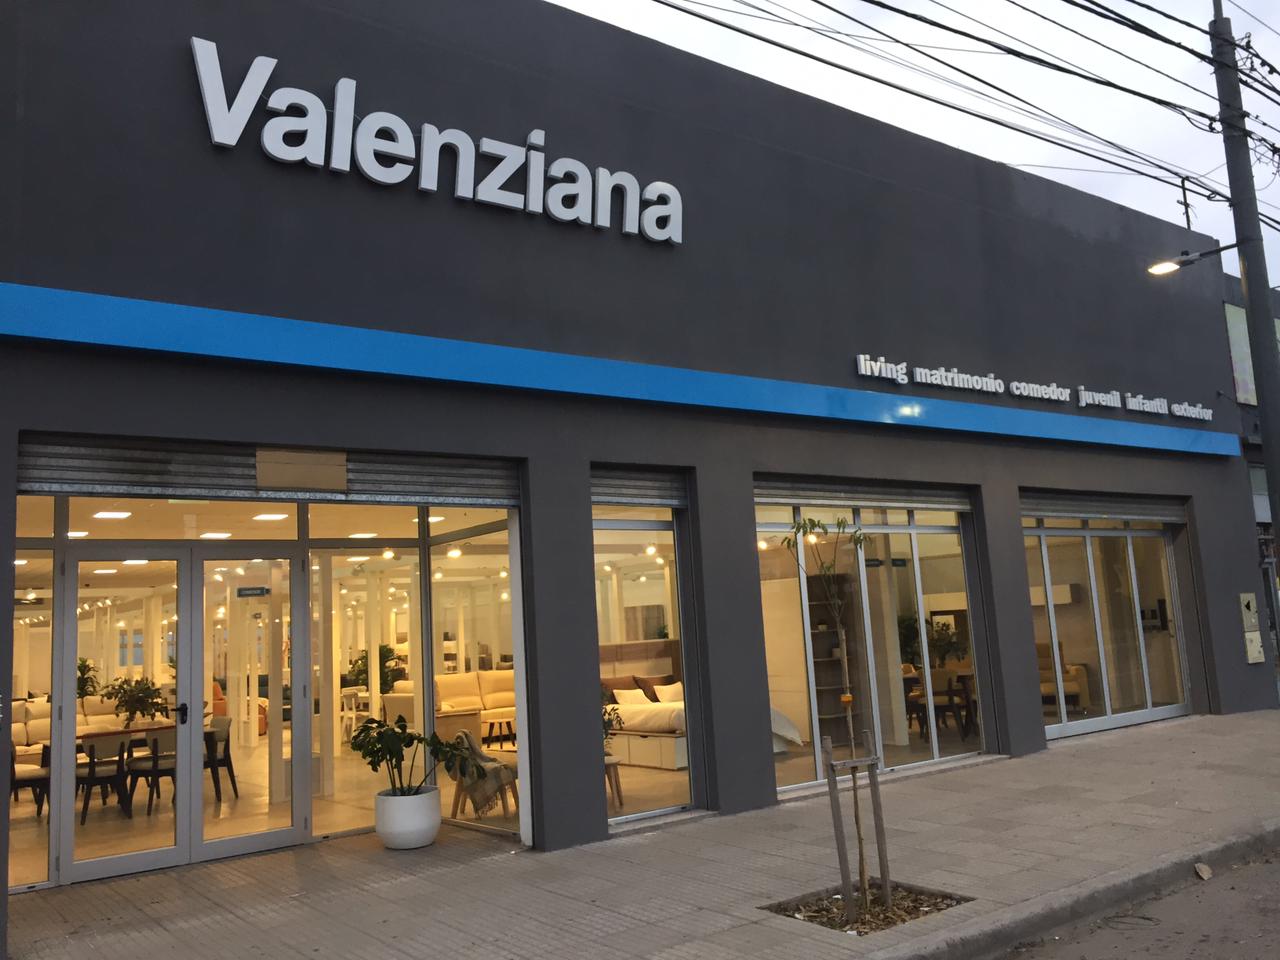 Valenziana abre su nuevo local en San Nicolás de los Arroyos: "Estamos apostando a un cambio radical"